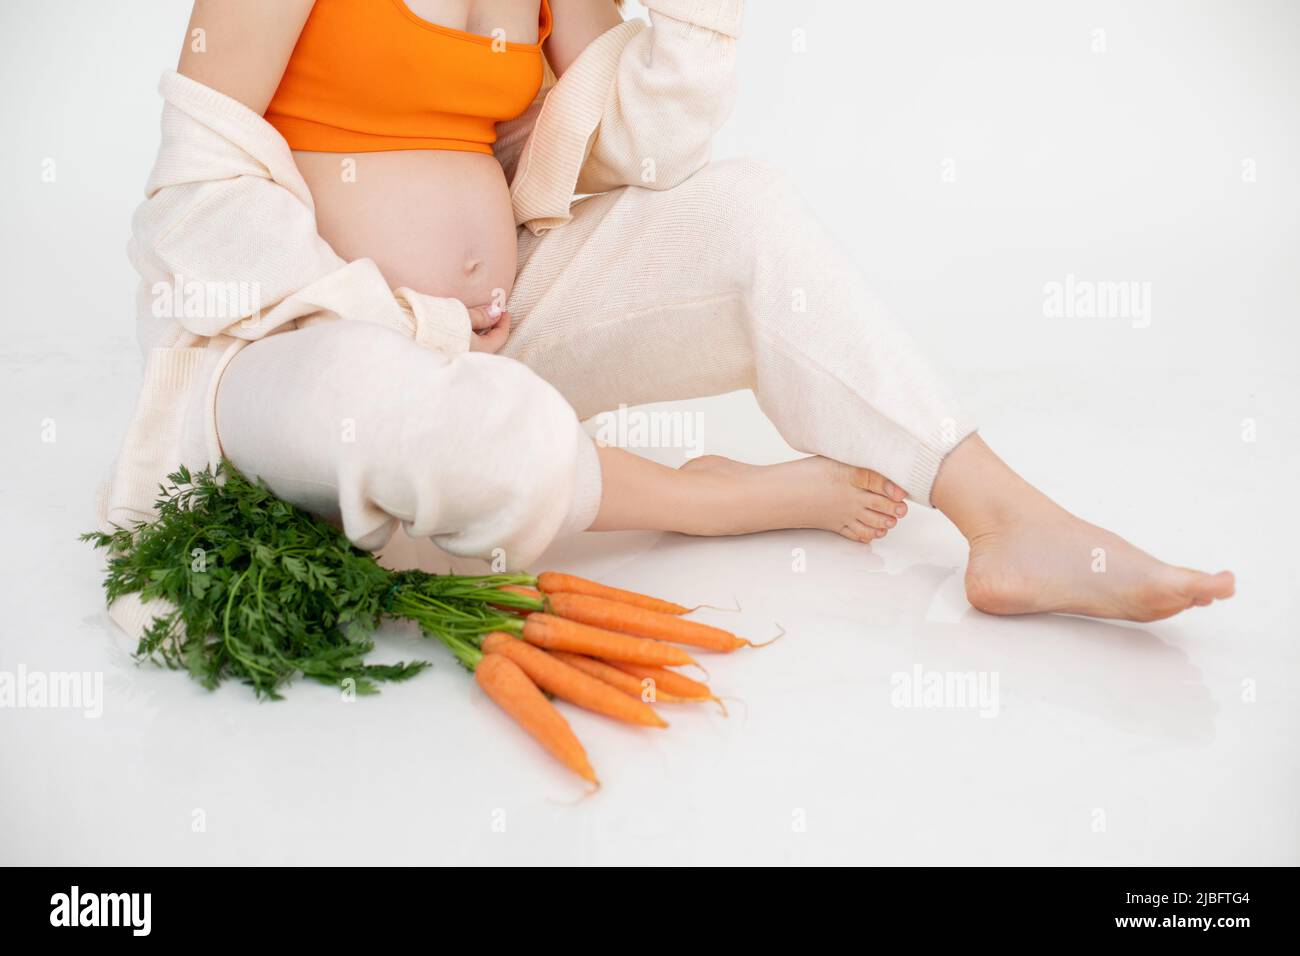 Foto ritagliata di donna incinta seduta con fascio di verdure arancioni, carote verdi. Dieta alimentare fresca Foto Stock